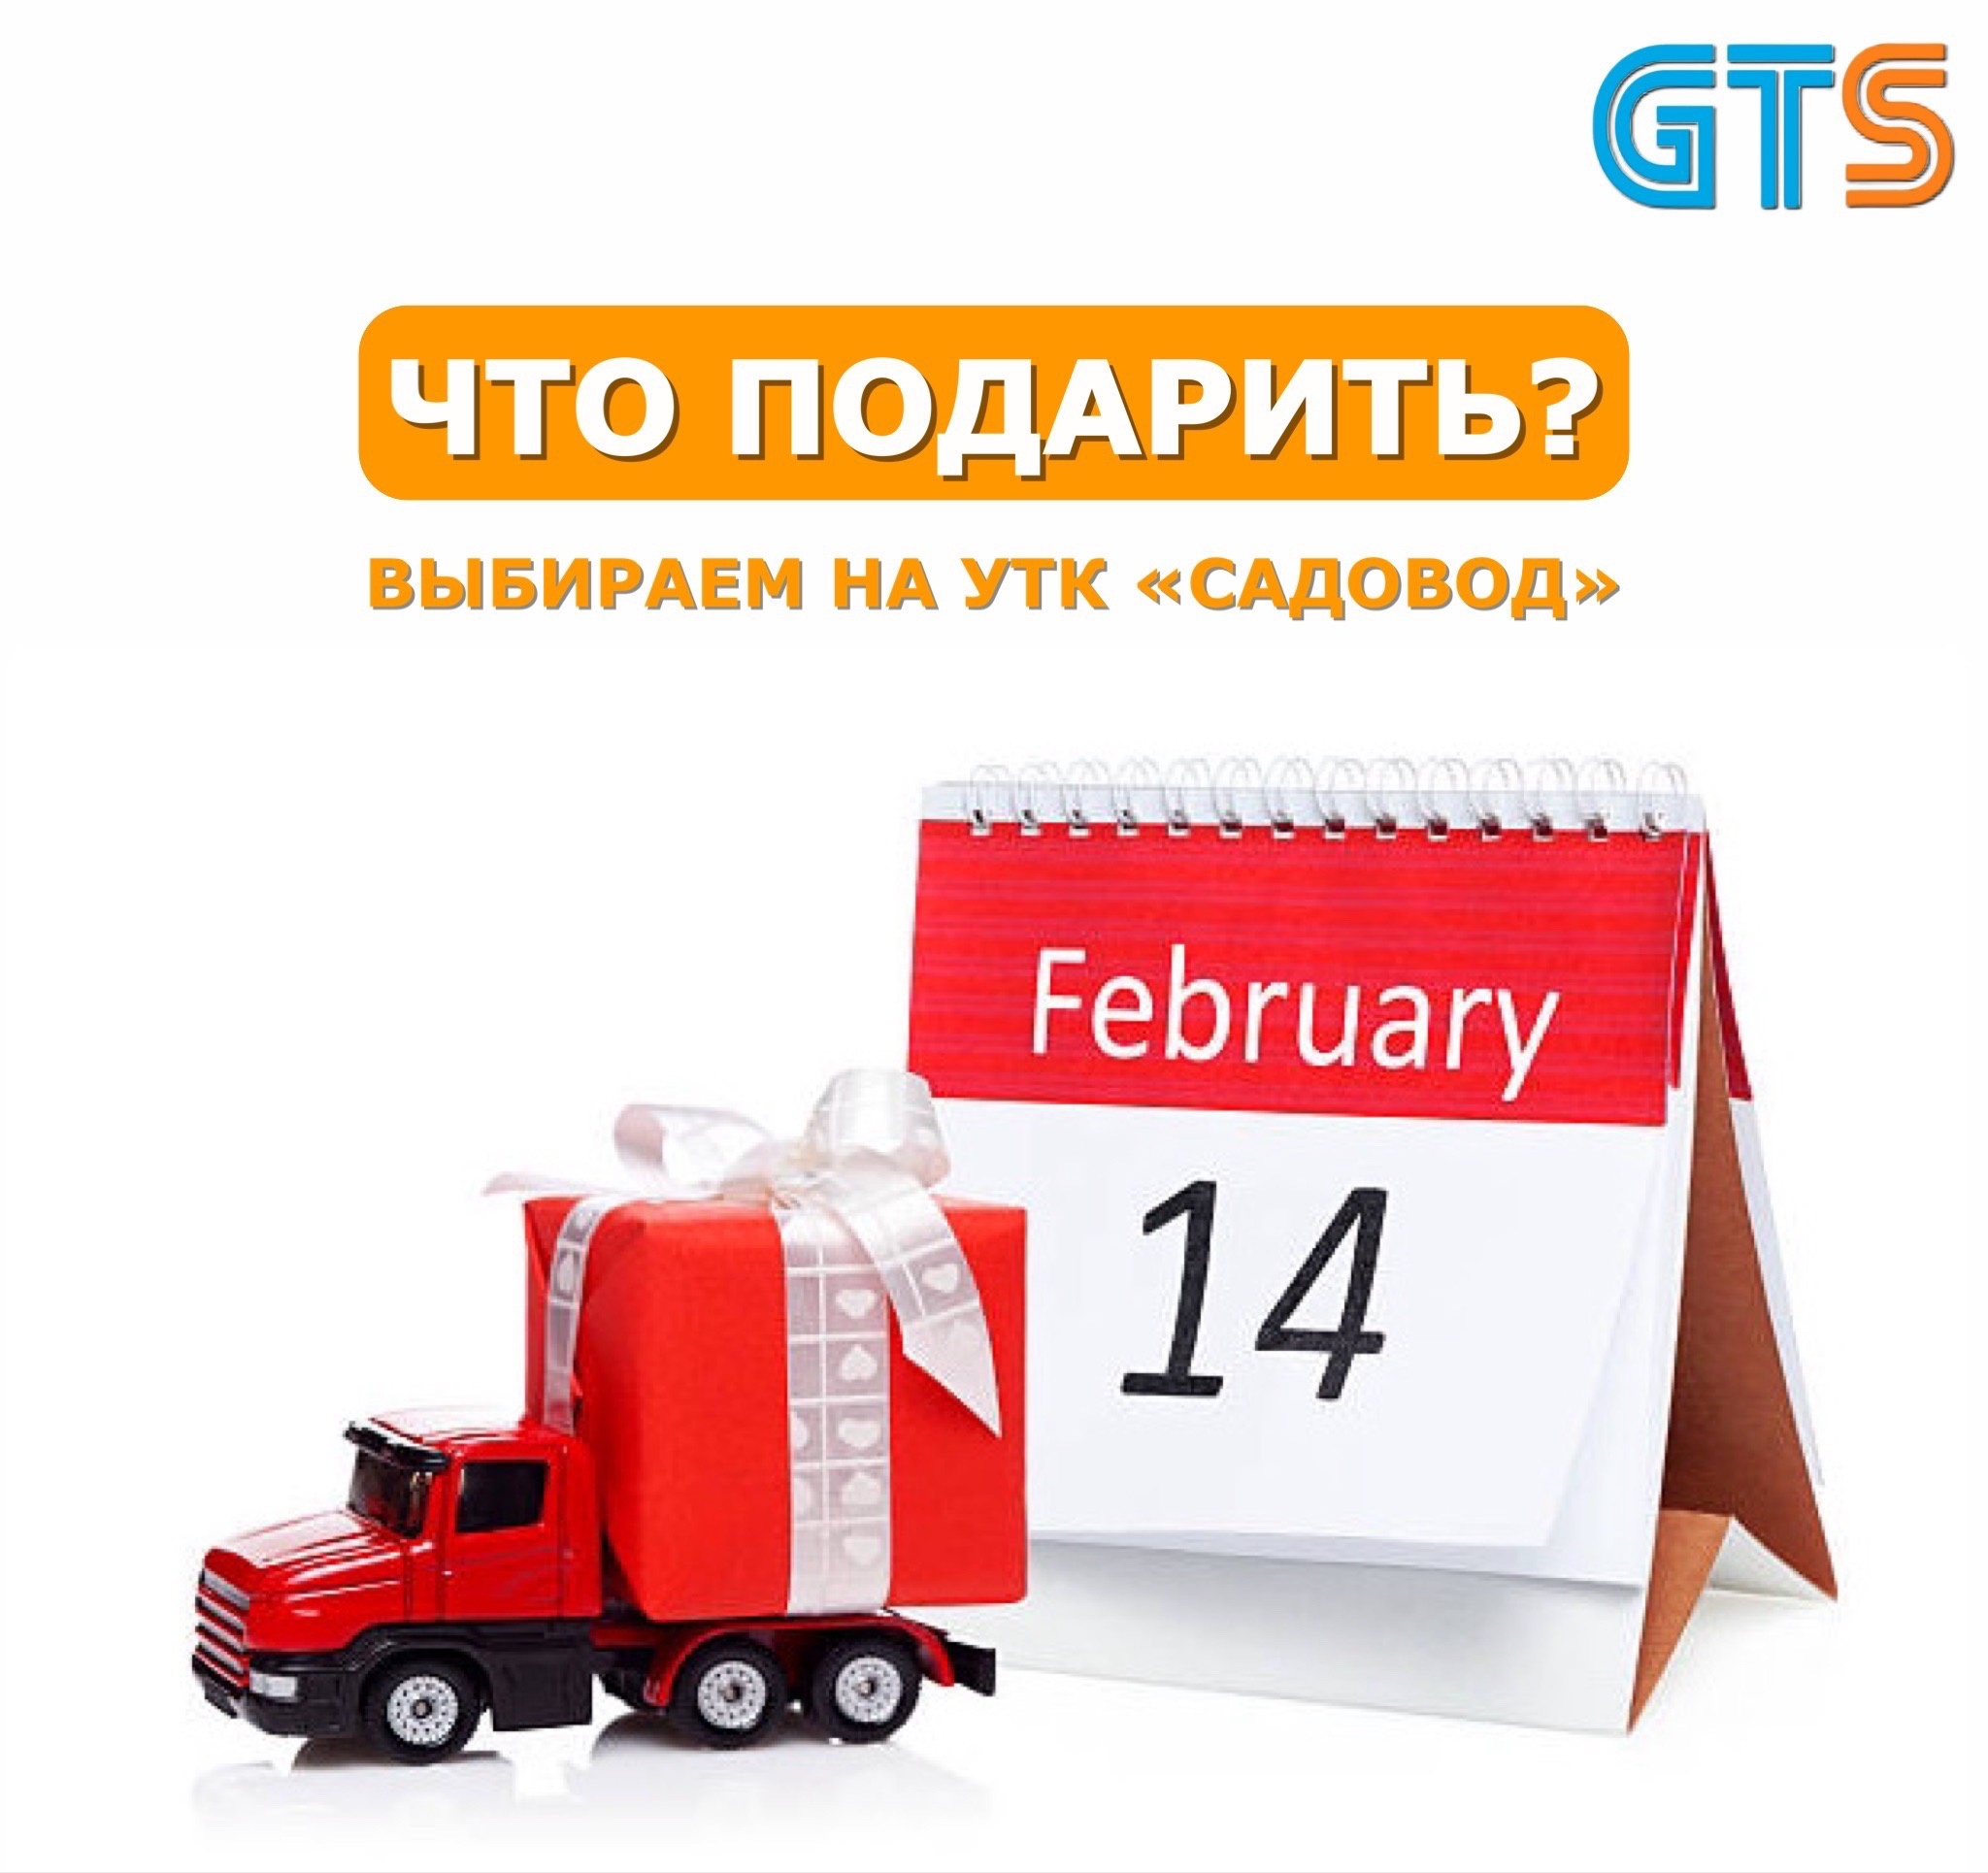 В преддверии февральских праздников Служба доставки GTS рада помочь с сюрпризом для Ваших близких и любимых!